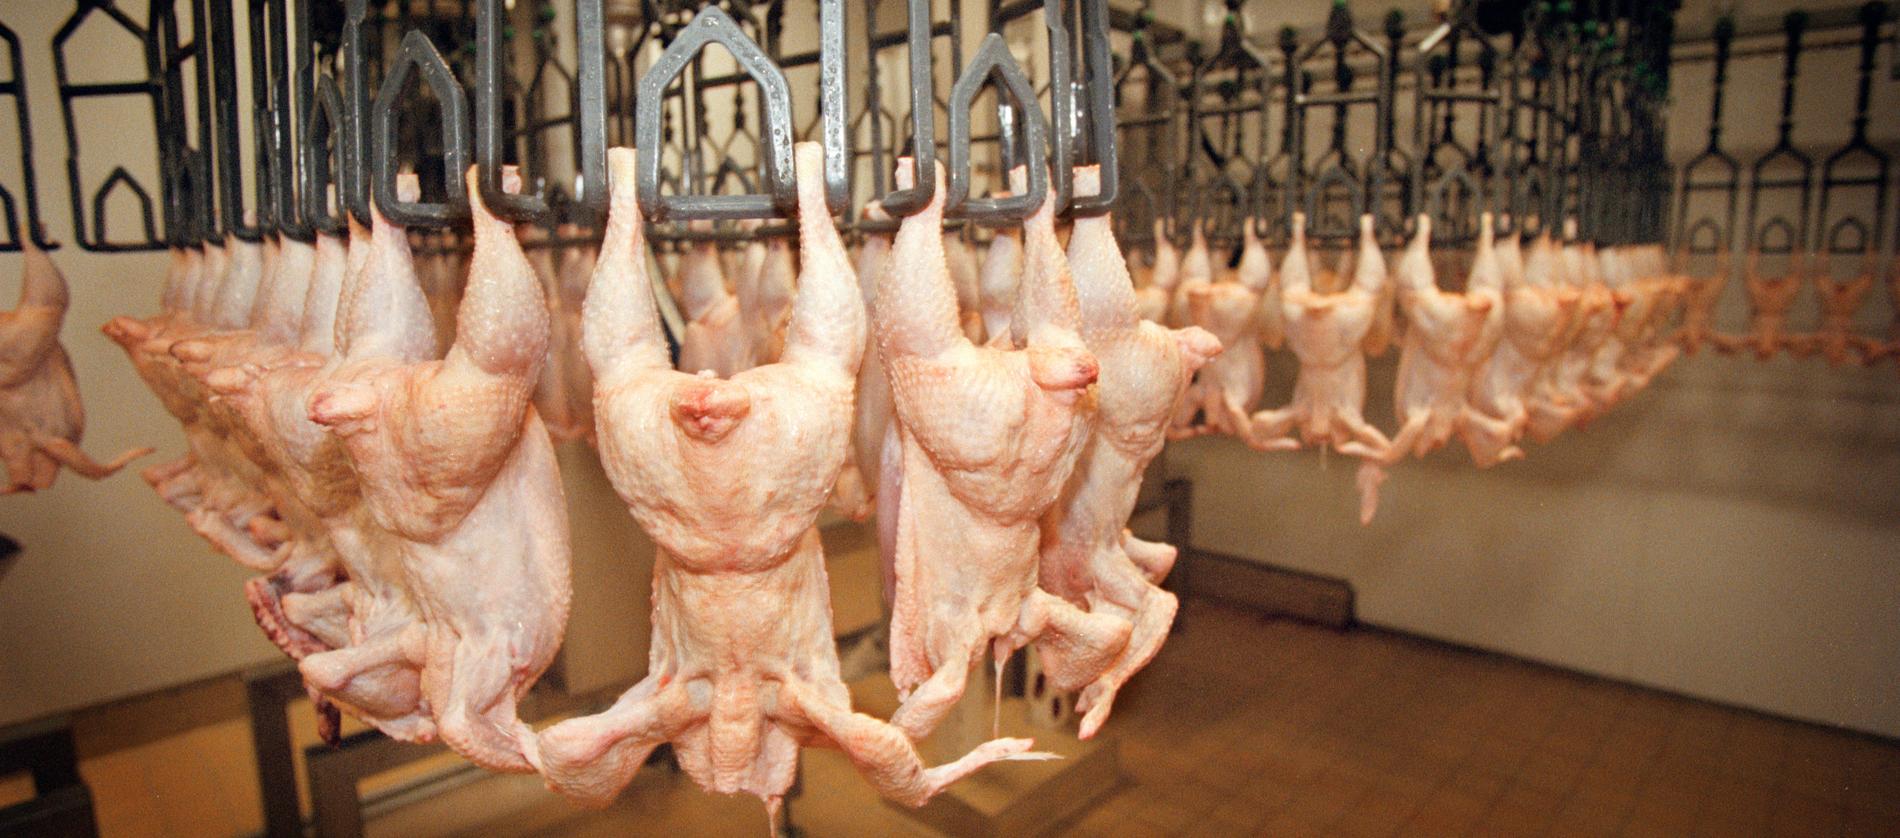 Produktionen på kycklingfabrikerna har pressats och flera problem i produktionsledet har rapporterats.